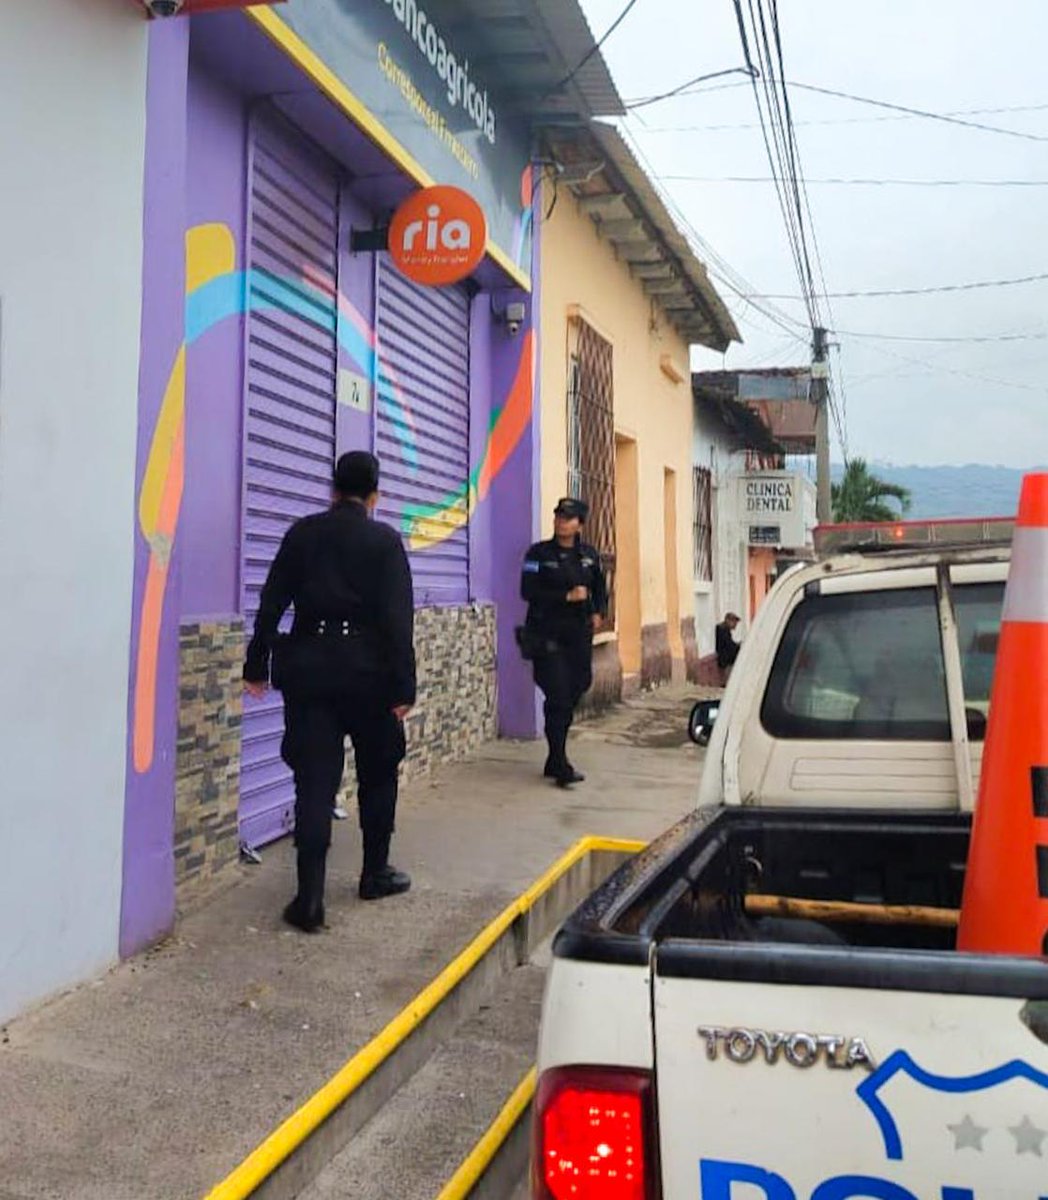 En Chalchuapa, Santa Ana, garantizamos calles seguras para que los habitantes transiten sin ningún temor. La misión de proteger a los salvadoreños no se detiene. #GuerraContraPandillas